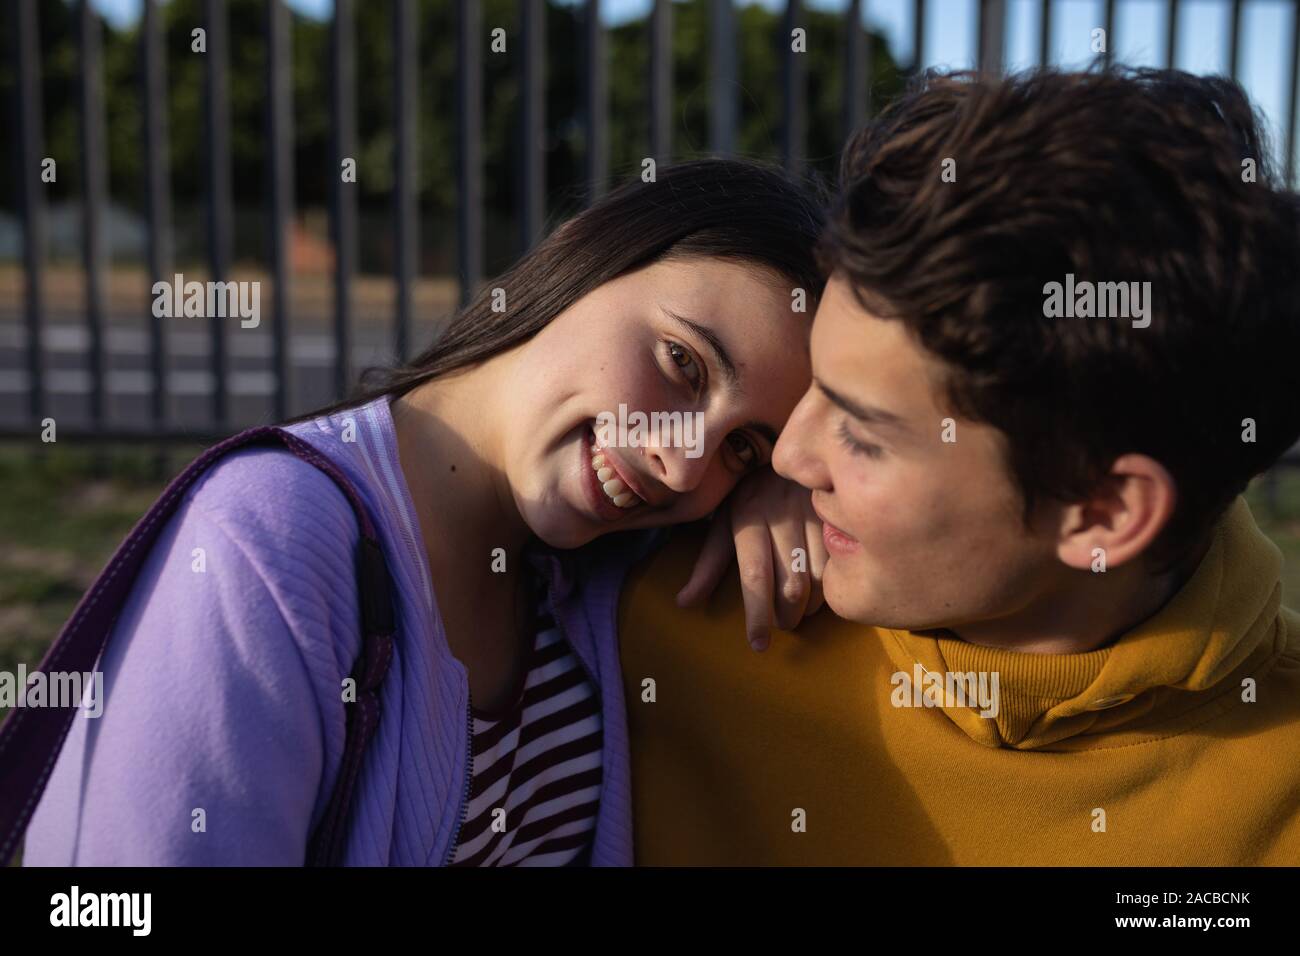 Couple adolescent traîner dans leur cour d'école Banque D'Images